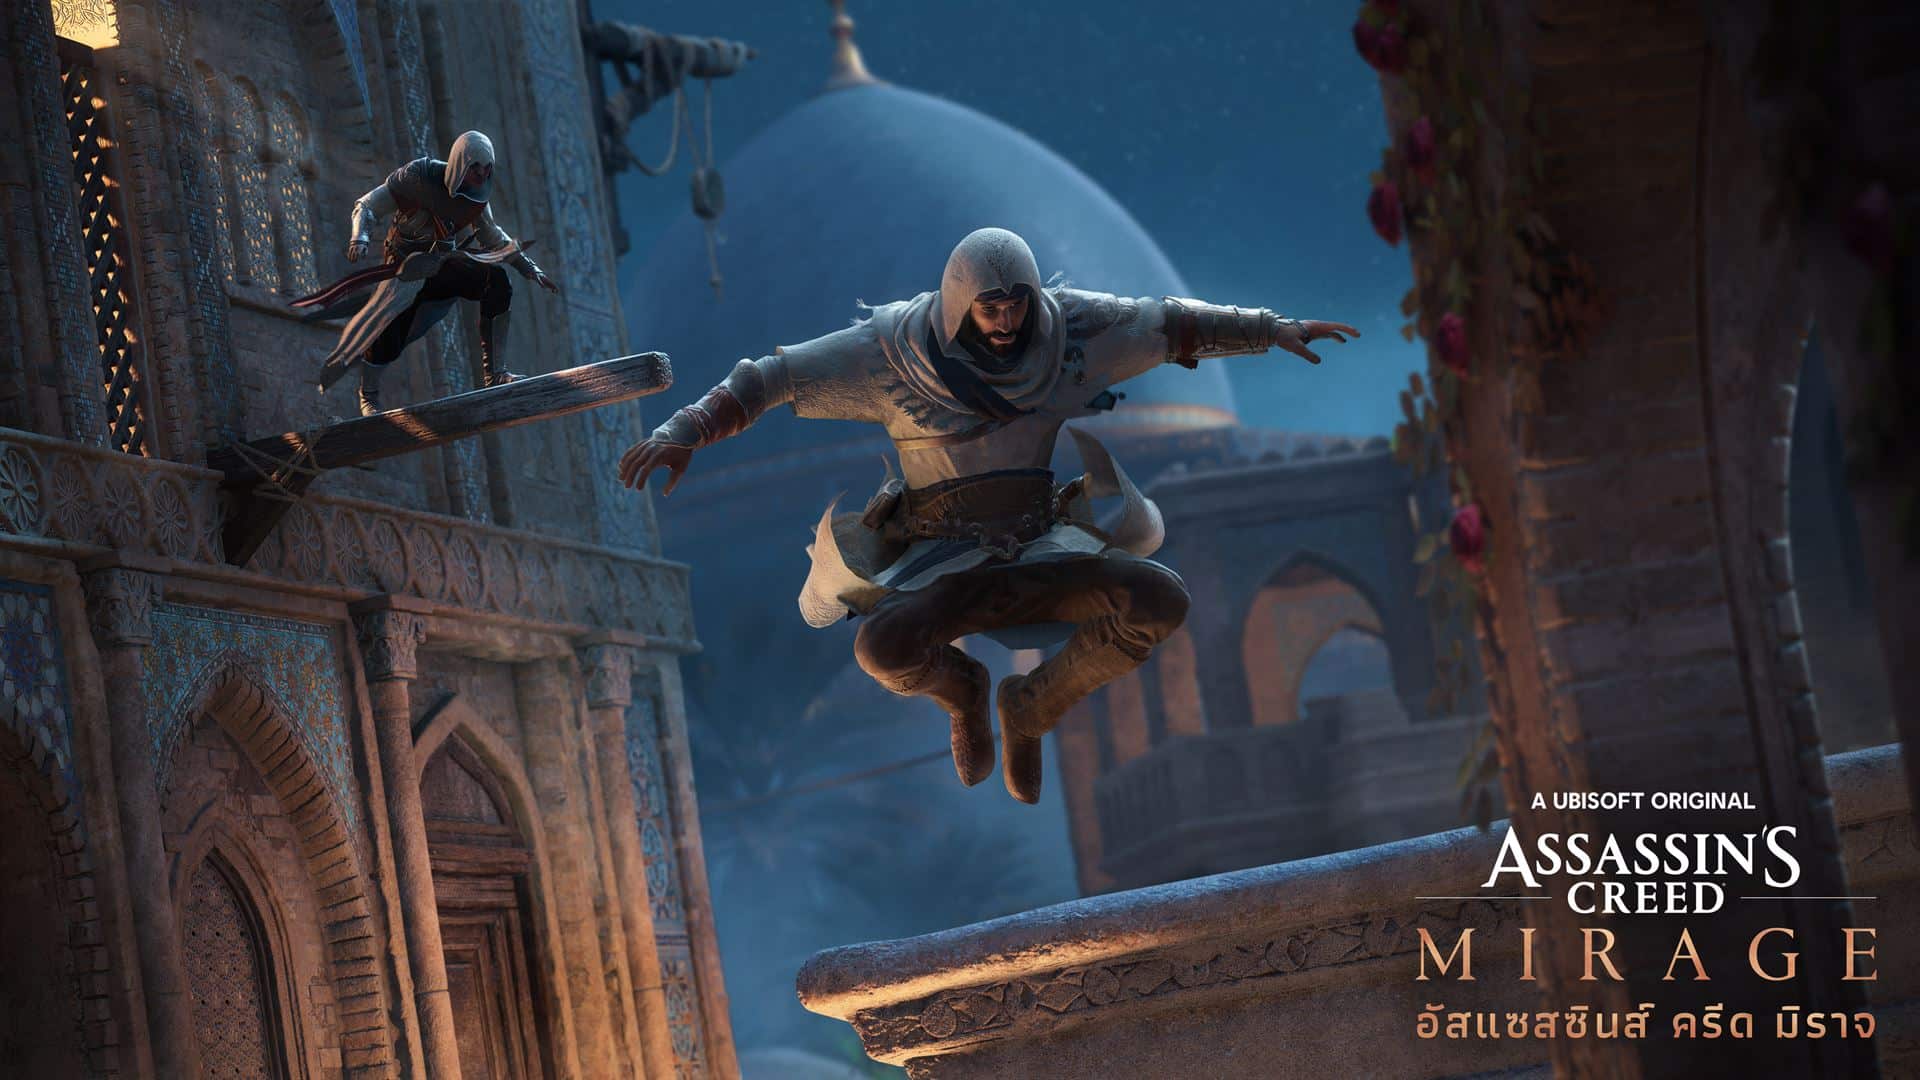 Assassin’s Creed® Mirage ประกาศวางจำหน่าย 12 ตุลาคม พร้อมเผยเกมเพลย์แรกให้ได้รับชม  